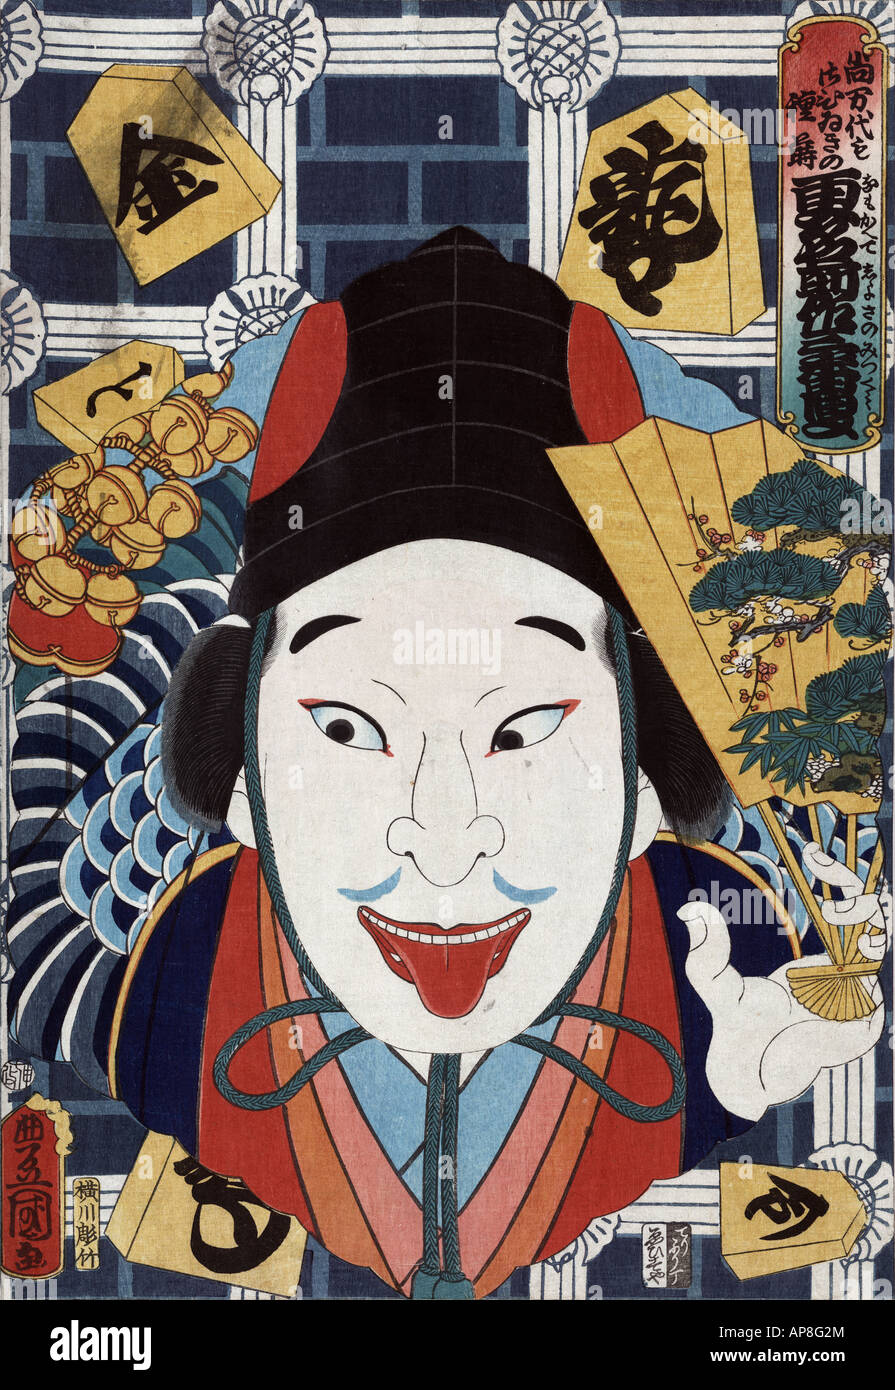 Portraits d'acteurs, souvent jouant des rôles, le Japon entre 1860 et 1866 (sceau date : 1860.7) Banque D'Images